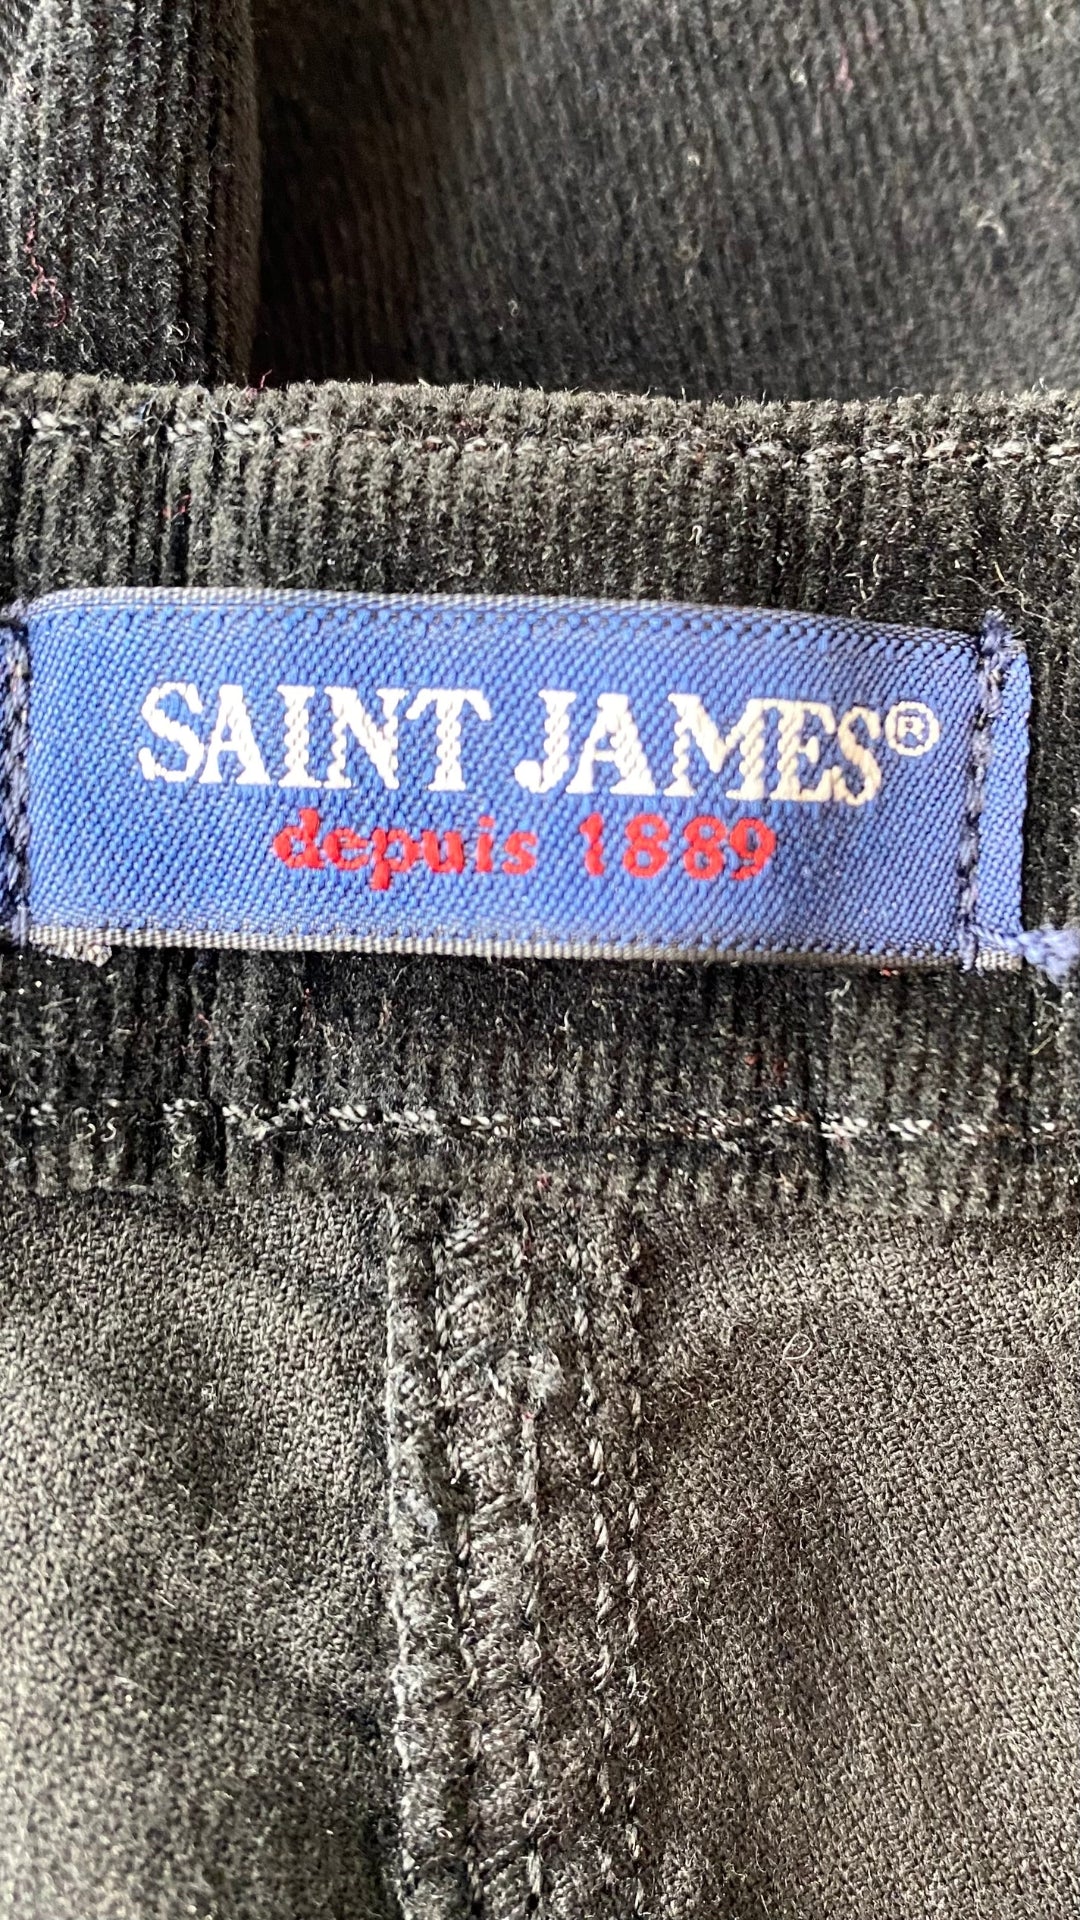 Pantalon en fin velours côtelé noir à jambes larges Saint-James, taille 14. Vue de l'étiquette de marque.